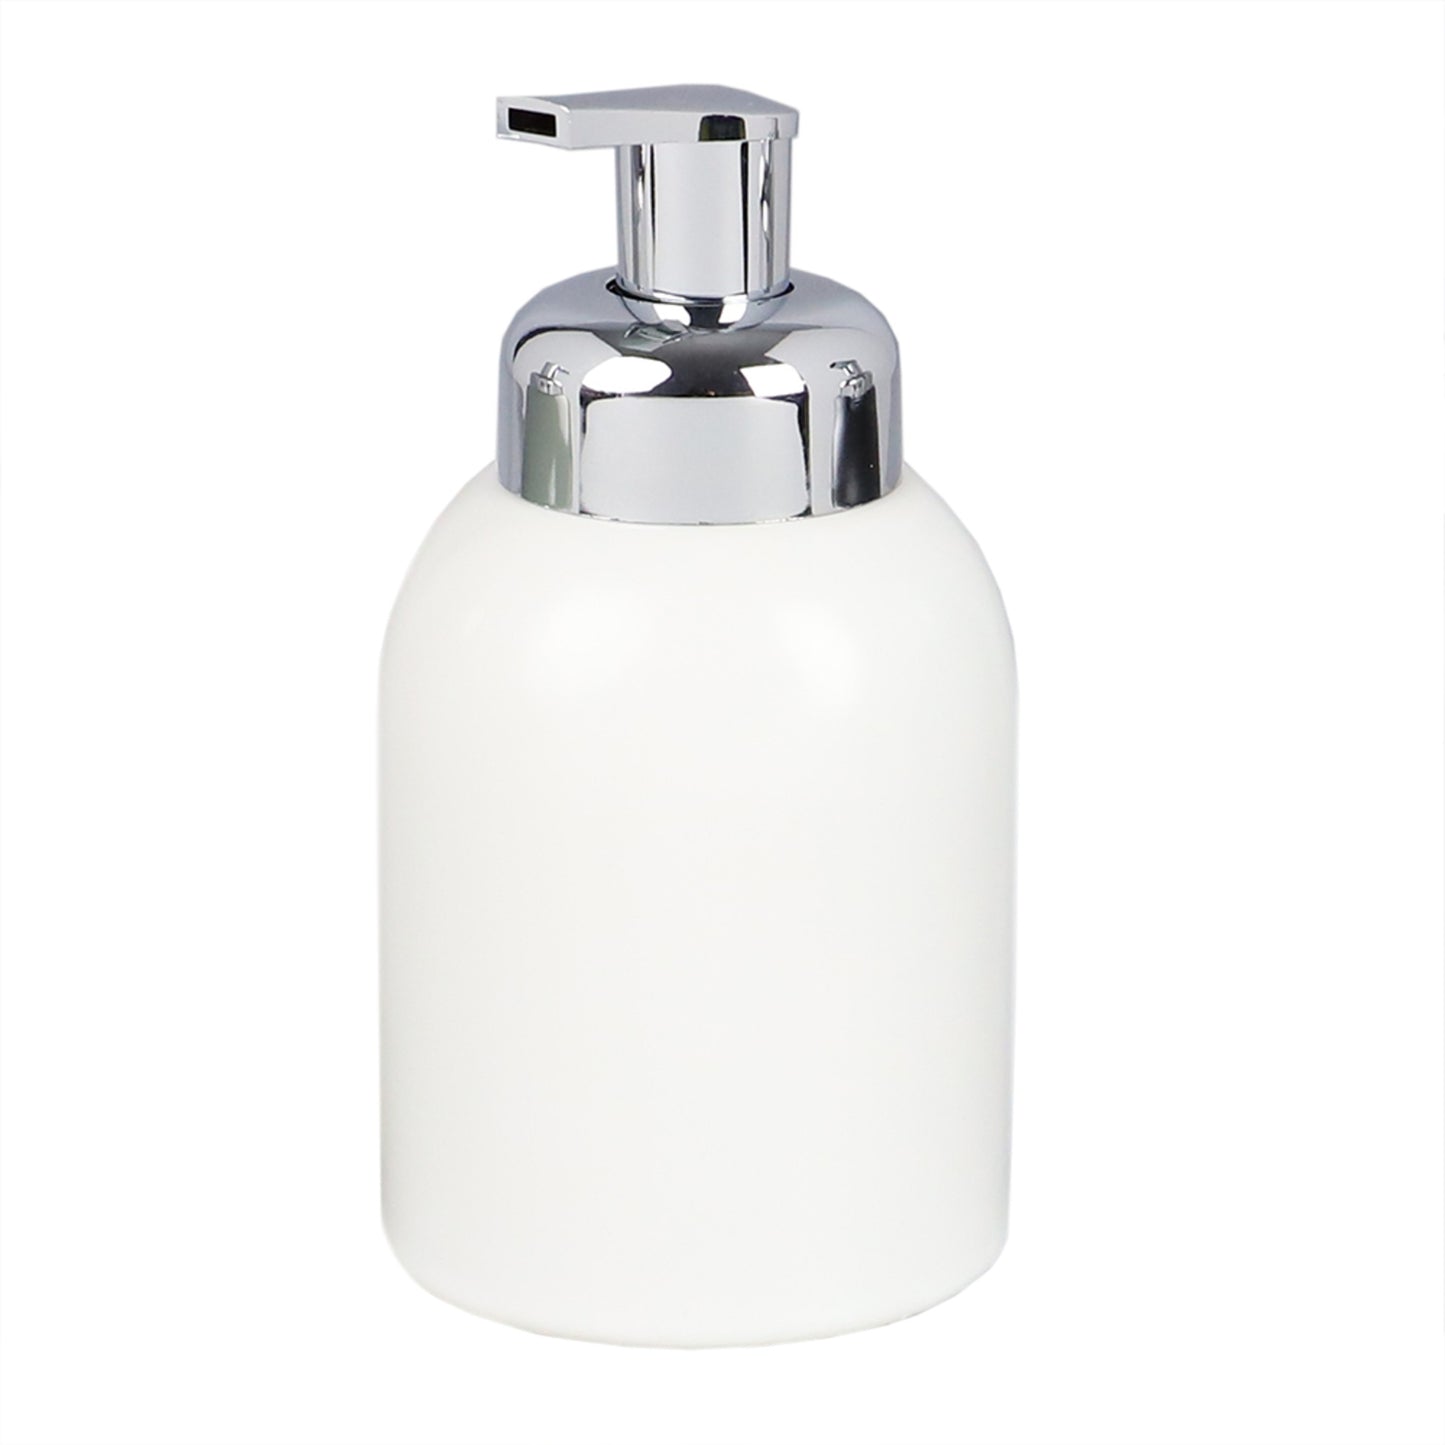 Home Basics 13.5 oz. Foaming Ceramic Soap Dispenser, White - White